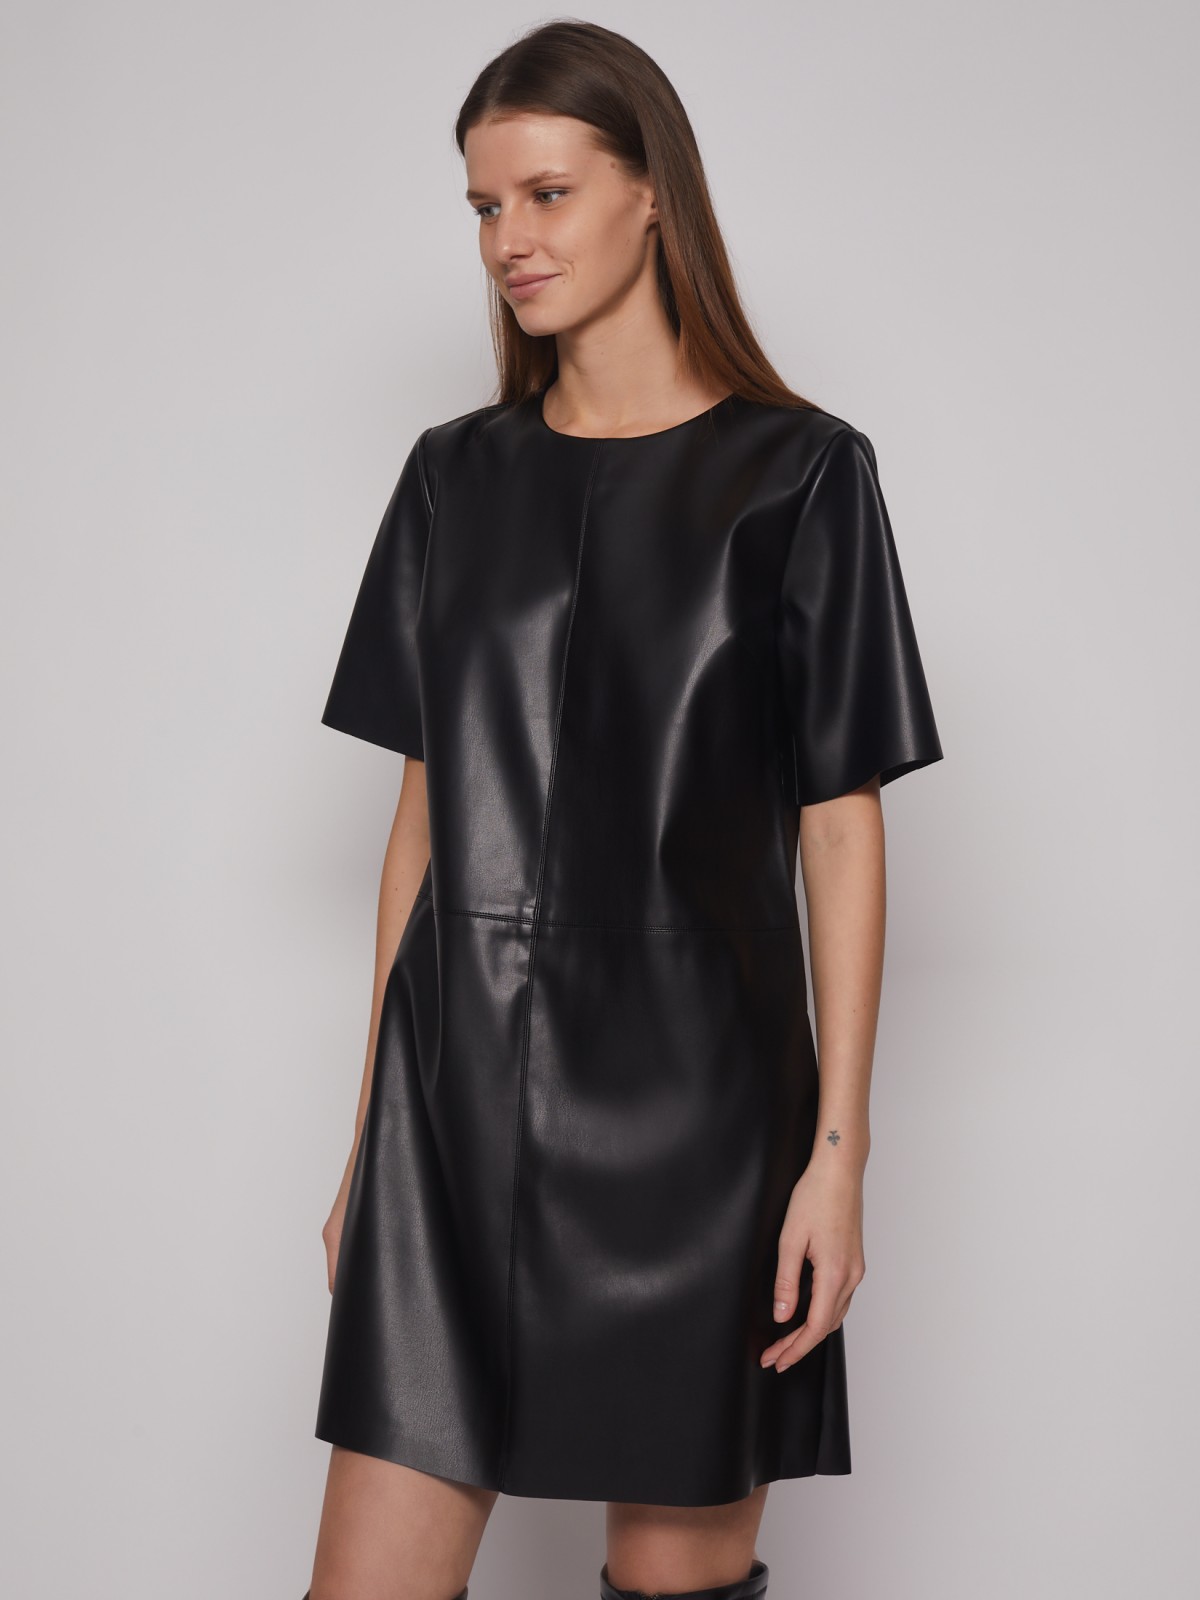 Платье-футболка из экокожи zolla 023128230263, цвет черный, размер S - фото 5